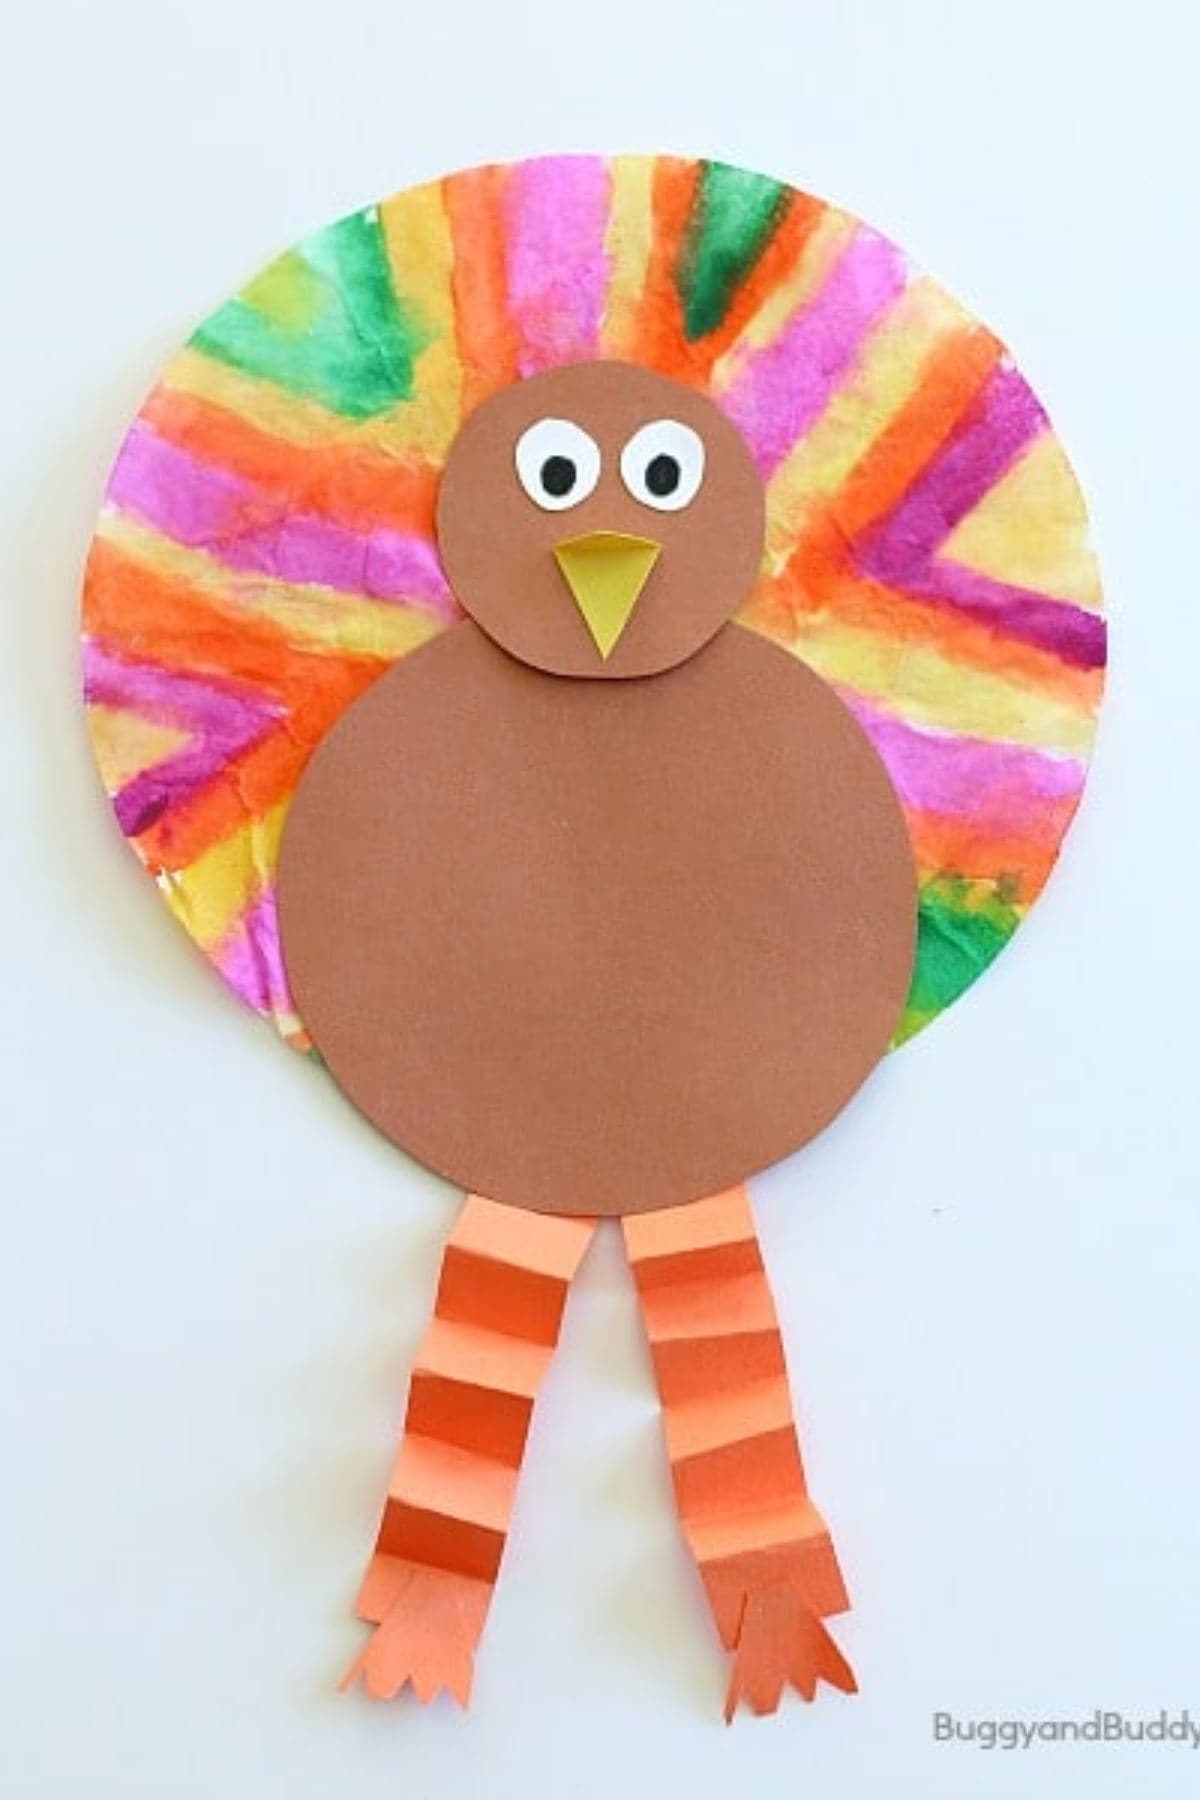 turkey craft for kids